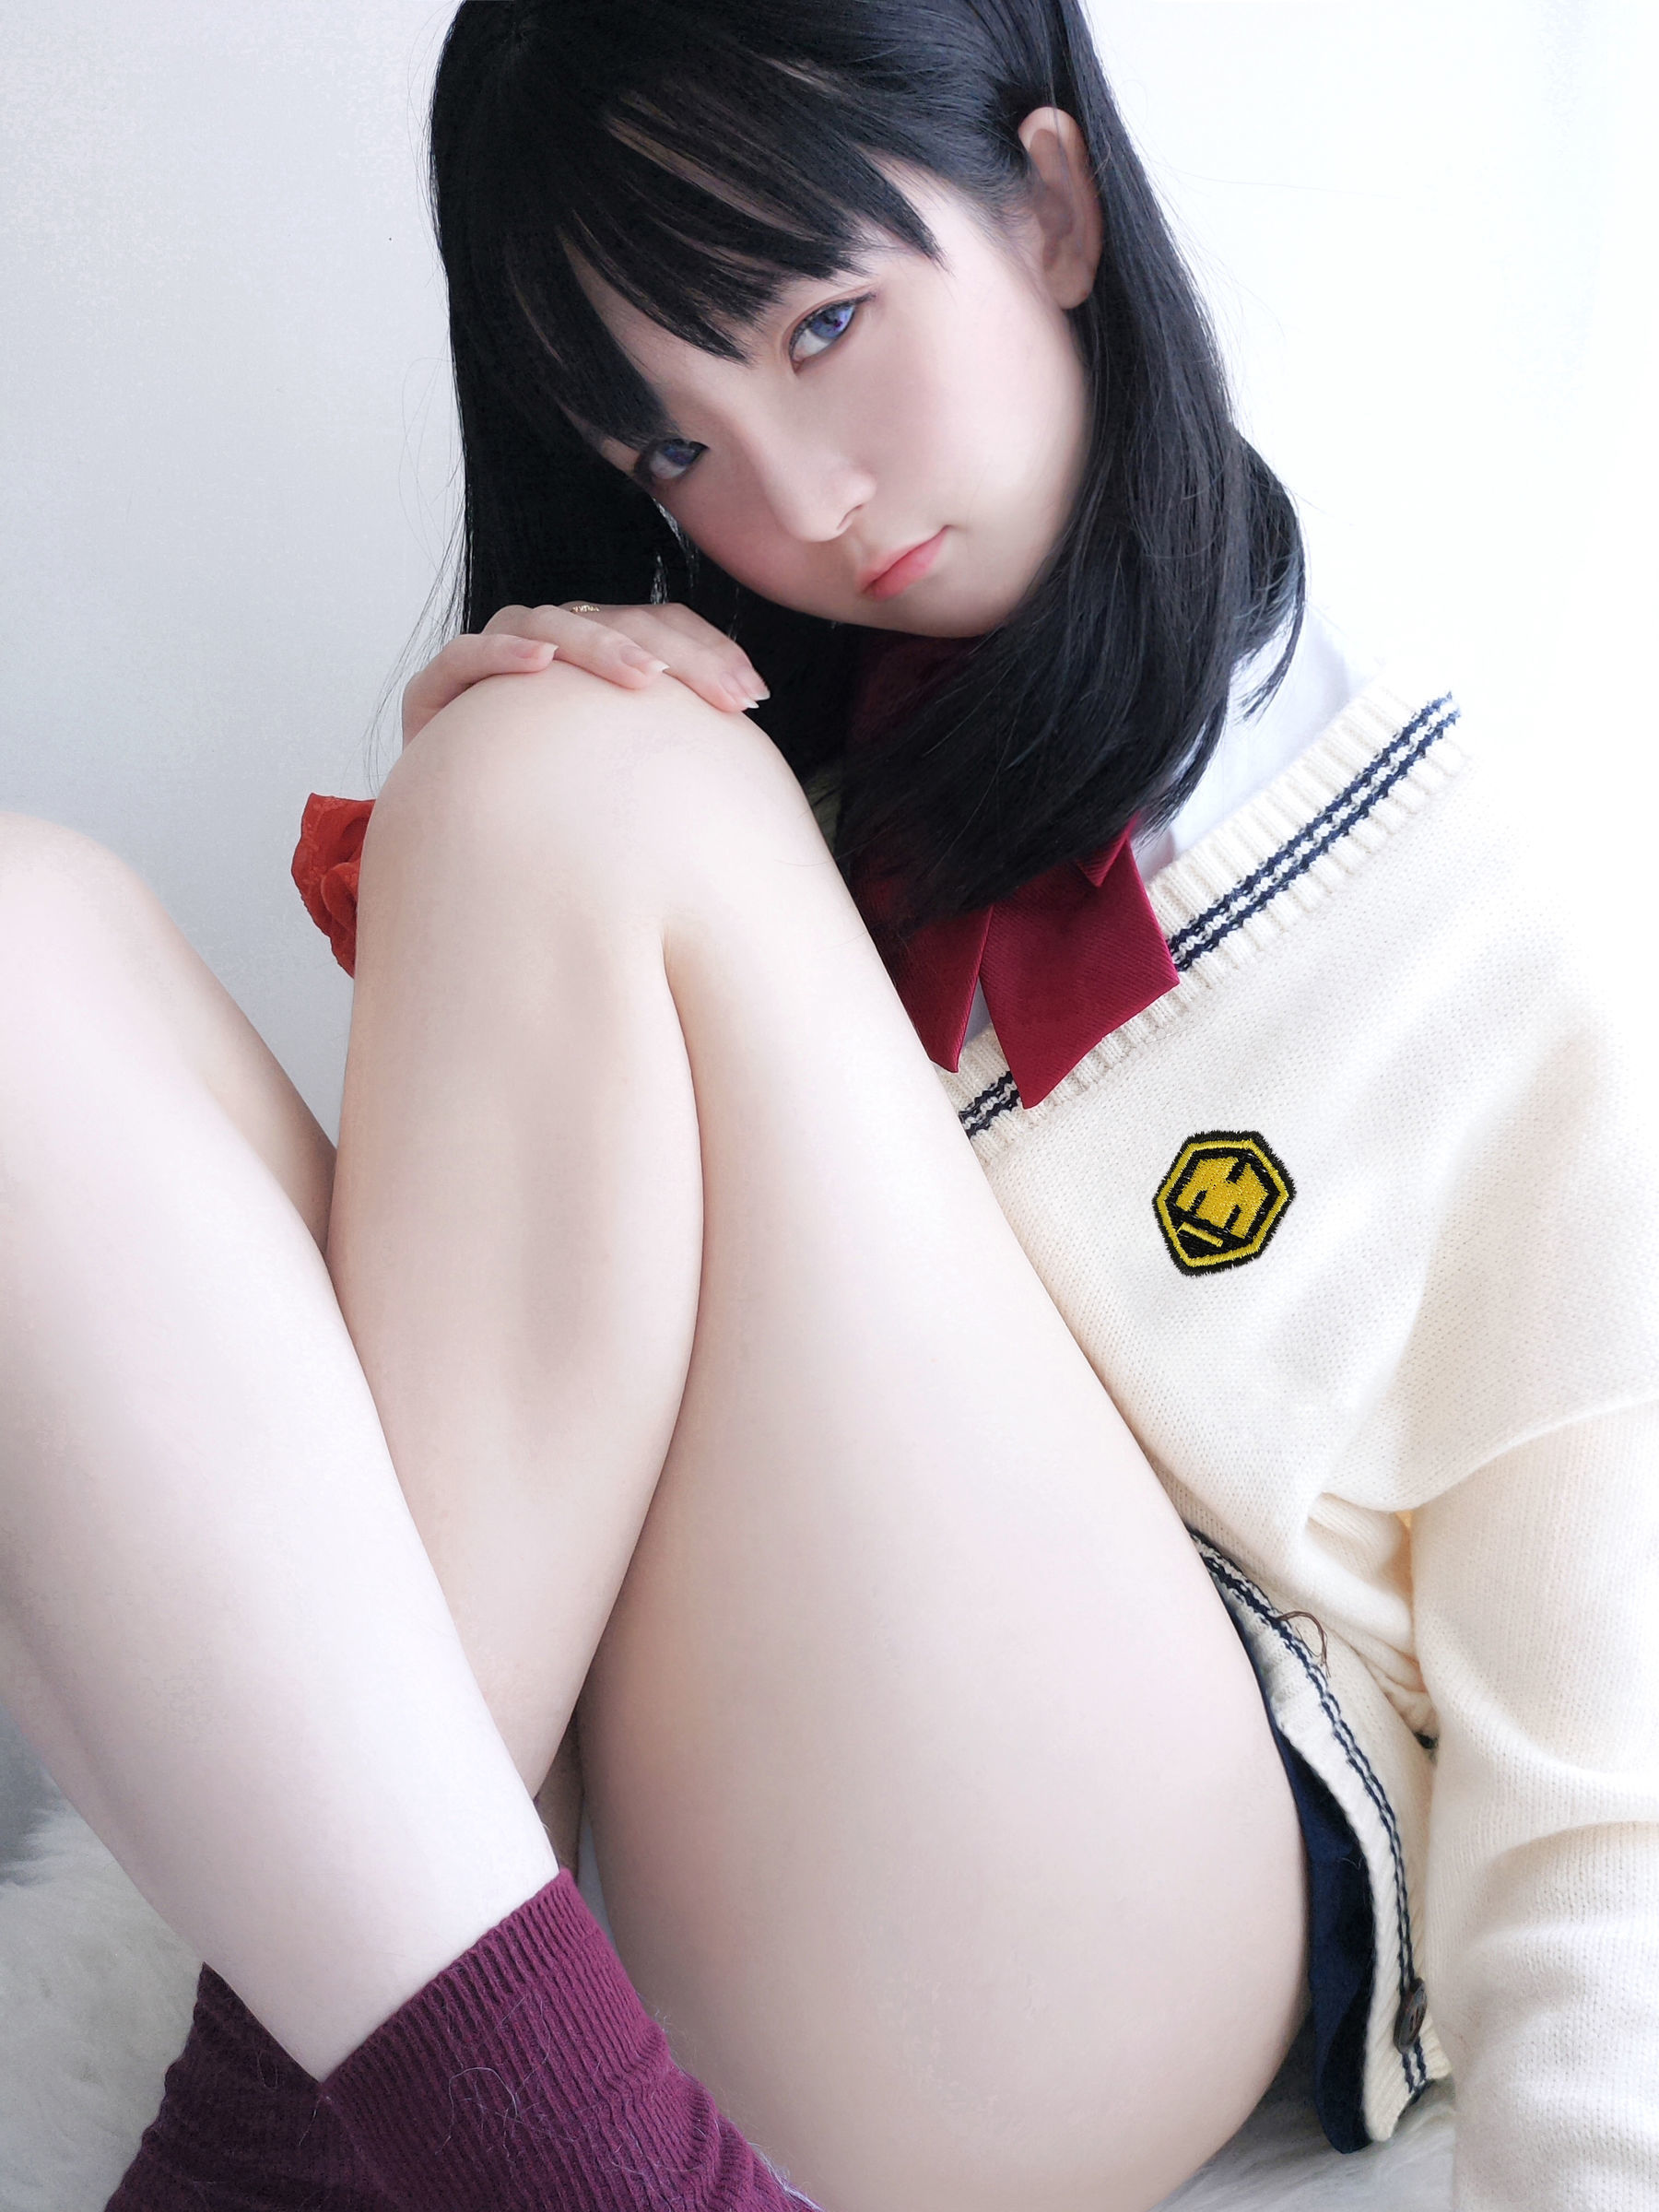 Xiao Yangze’s “Baoduo Liuhua” [COSPLAY Beauty] Photo Album